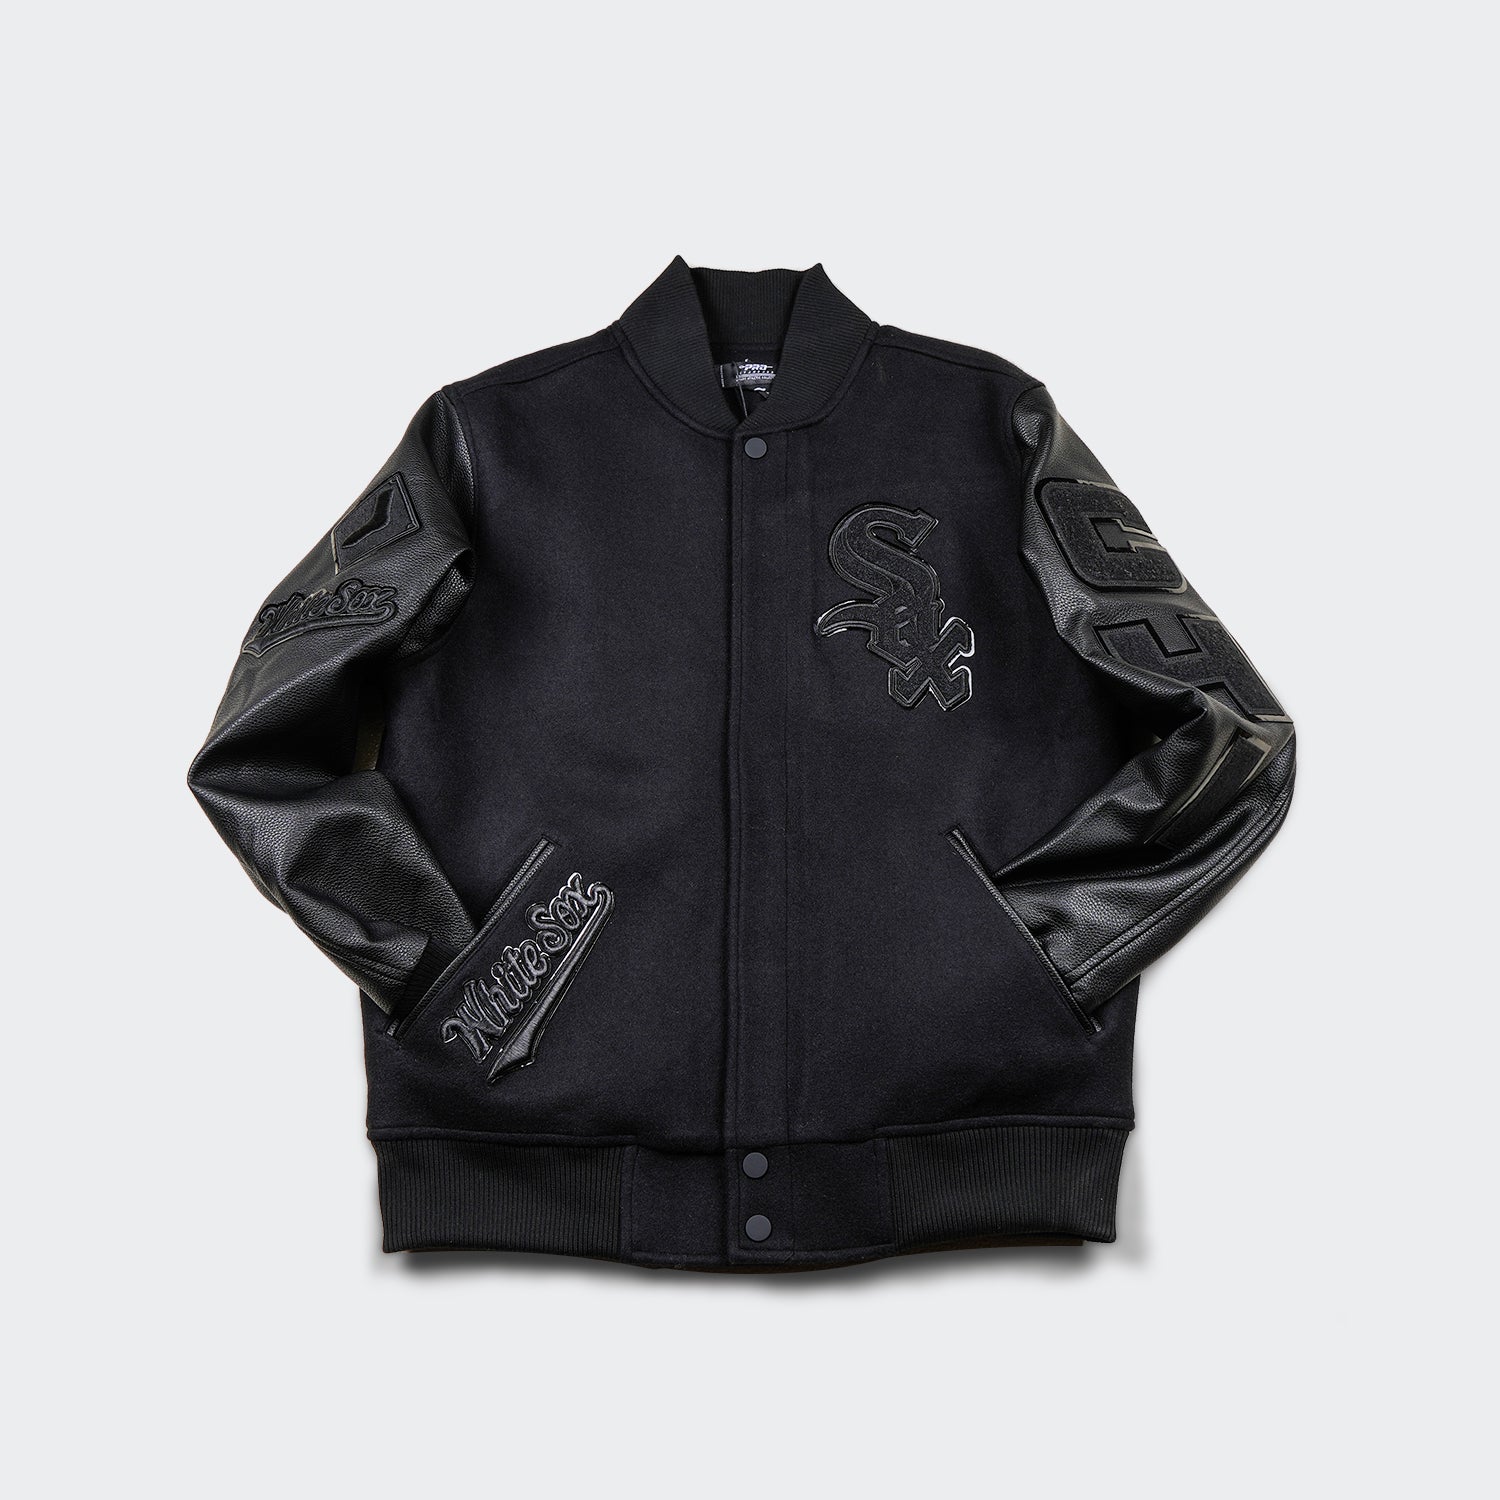 Buy Adidas Men's Varsity Jacket(CZ8078-M-BLACK/WHITE_Black/White_Medium) at